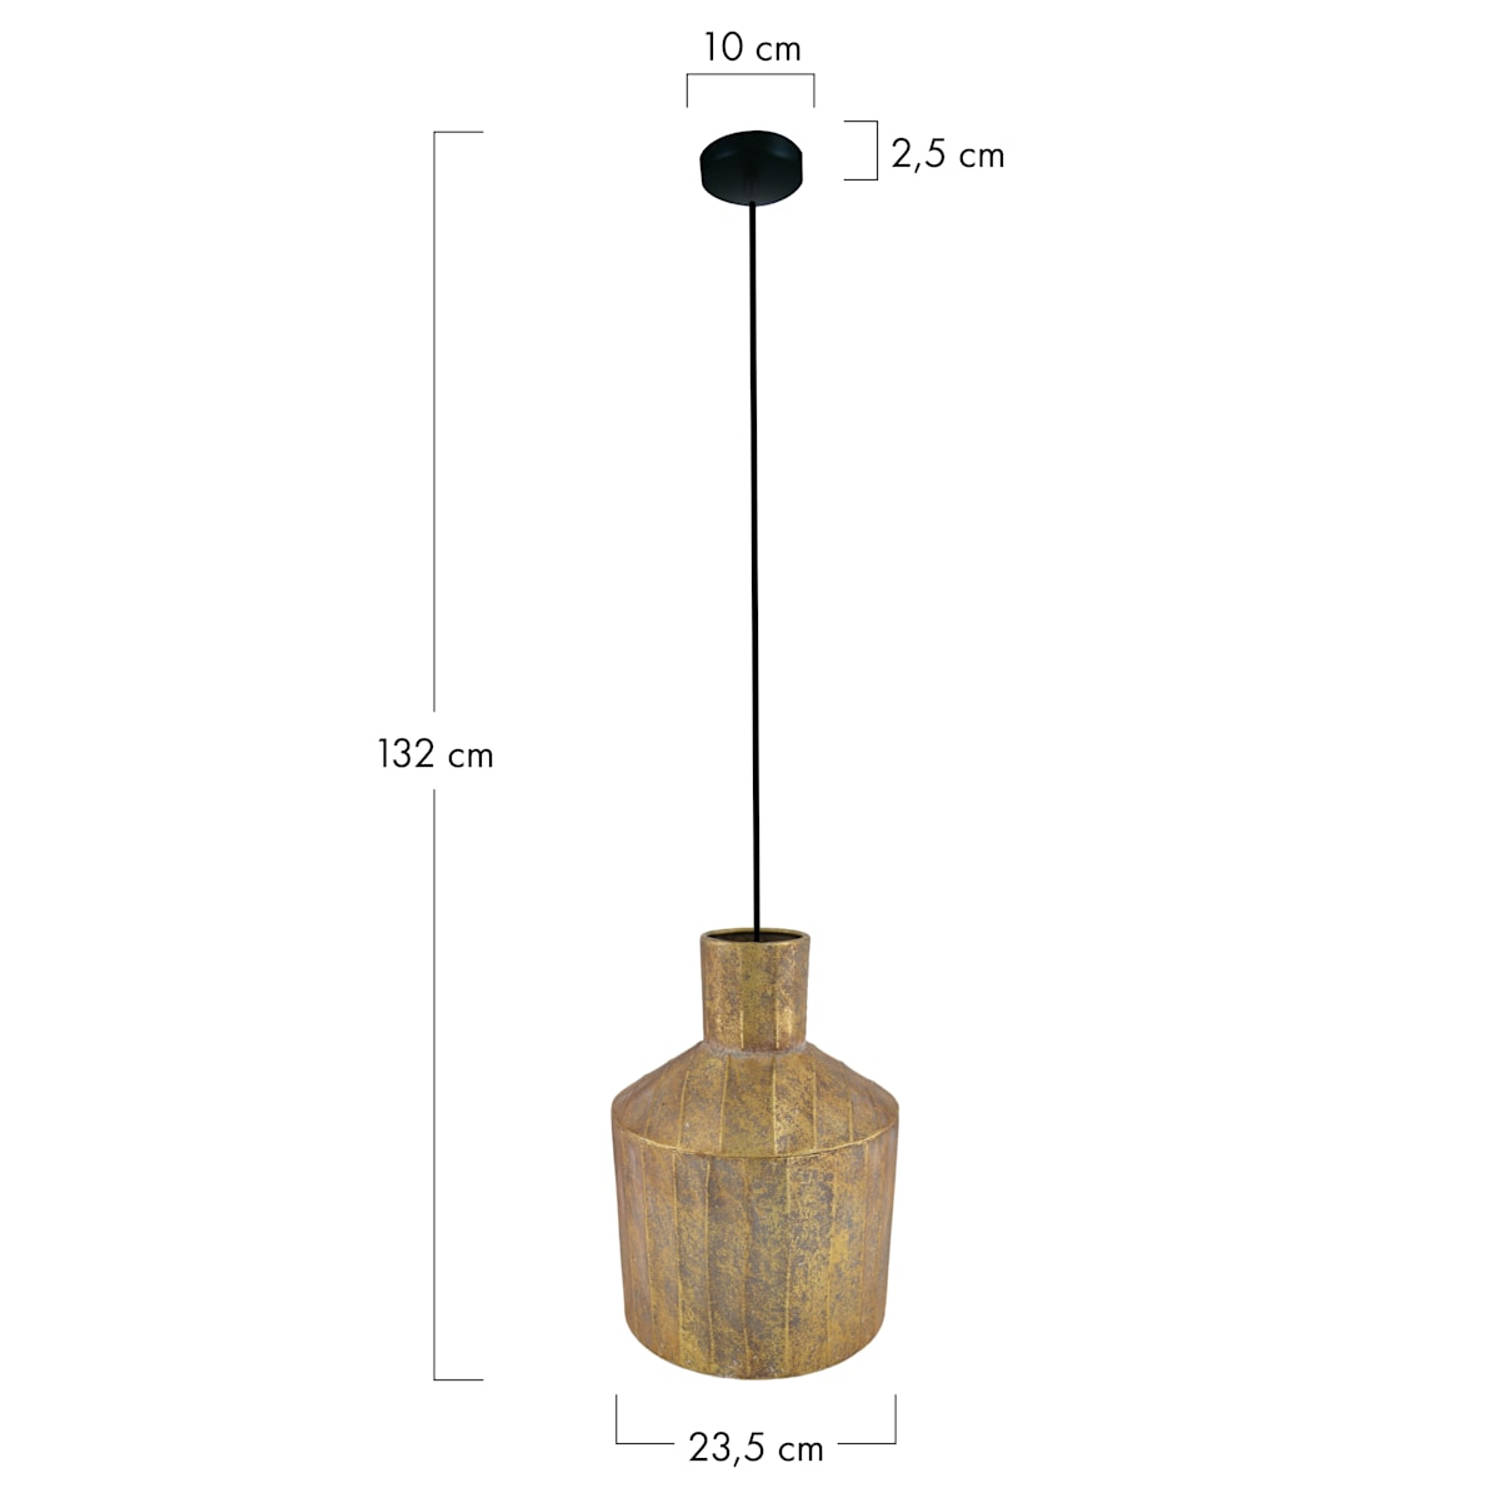 DKNC - Hanglamp Echo - Metaal - 23.5x23.5x32cm - Goud